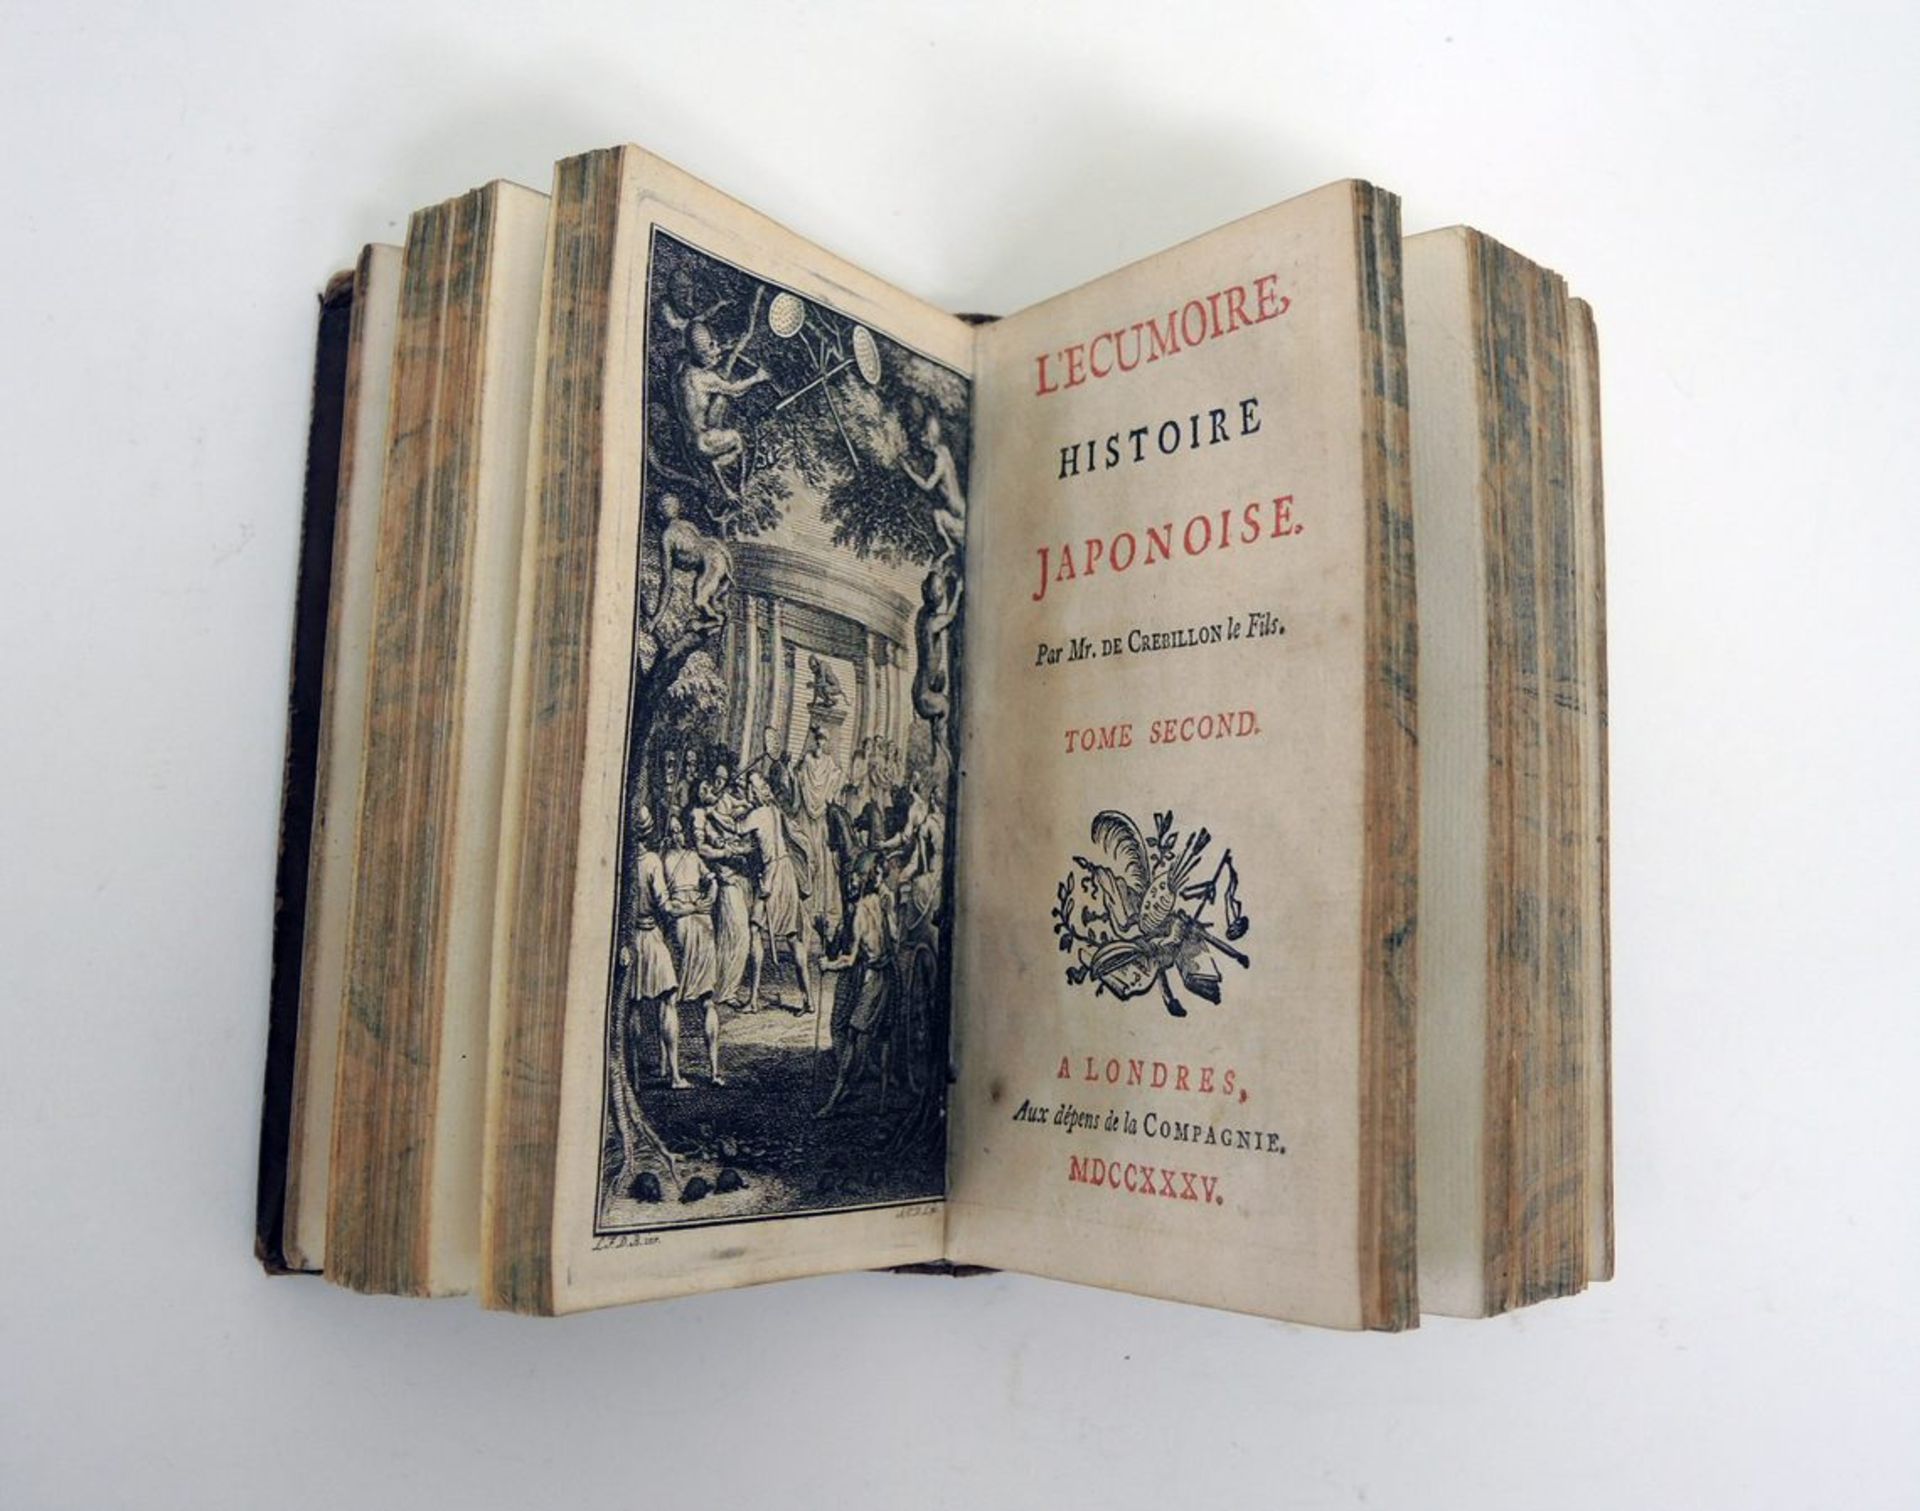 Claude Prosper de CrebillonL'Ecumoire, Histoire Japonoise. London 1735. Zwei Teile in 1 Bd. Mit